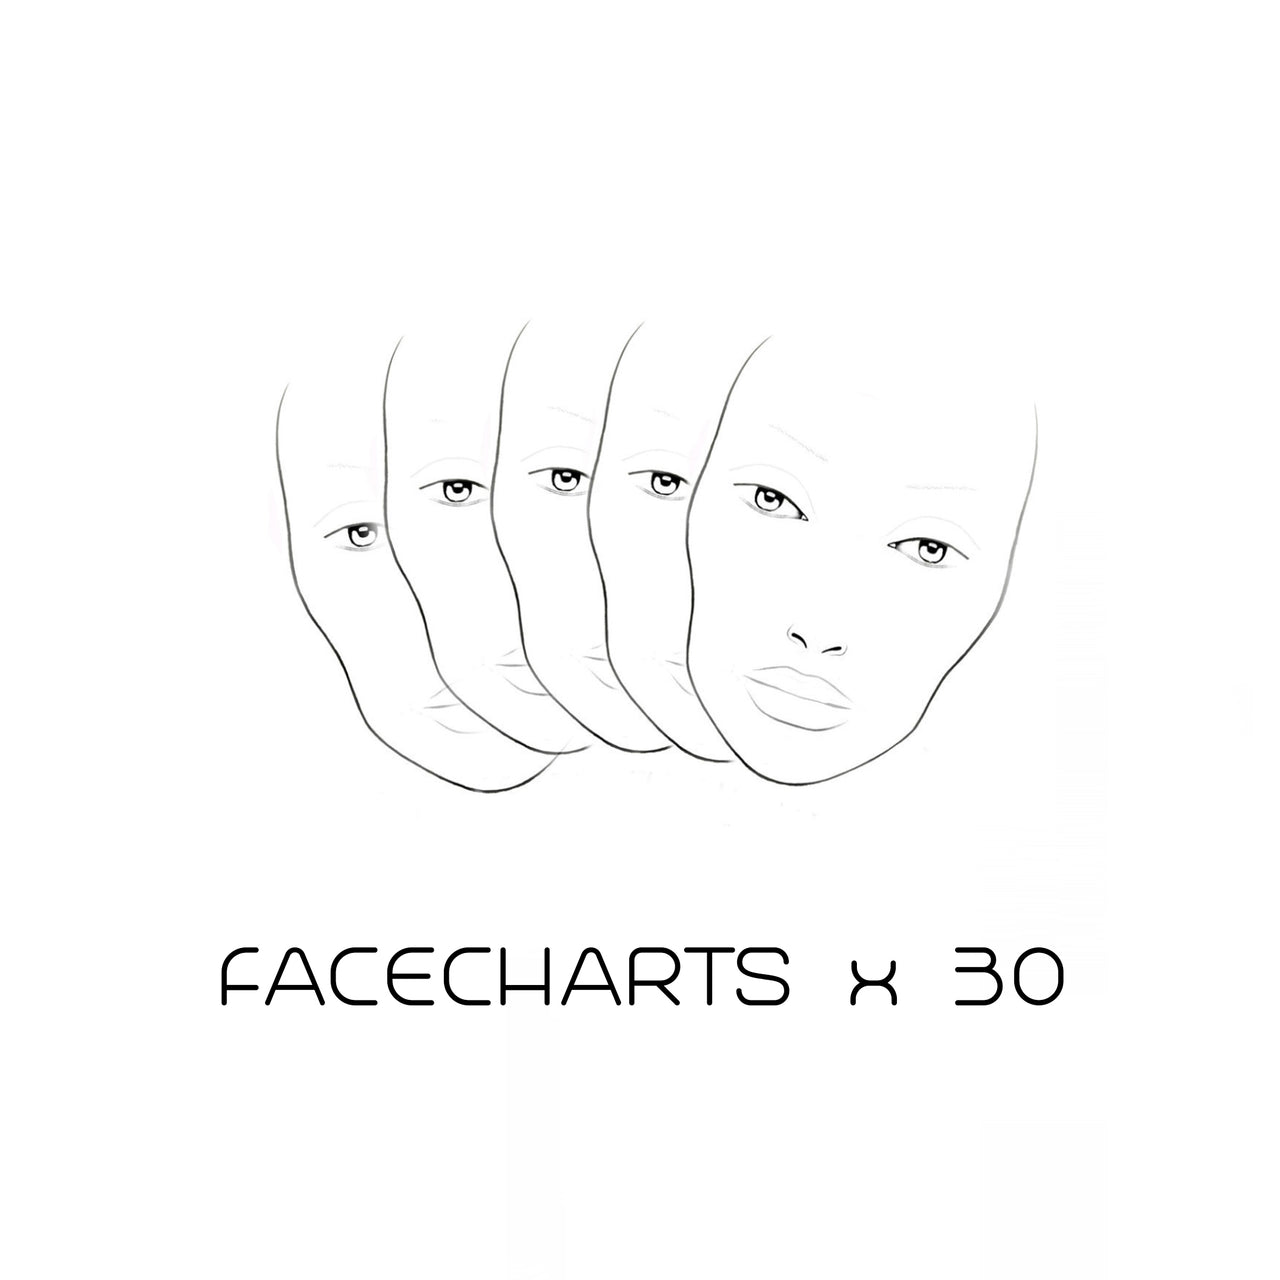 MY FACE CHARTS - MYKITCO.™